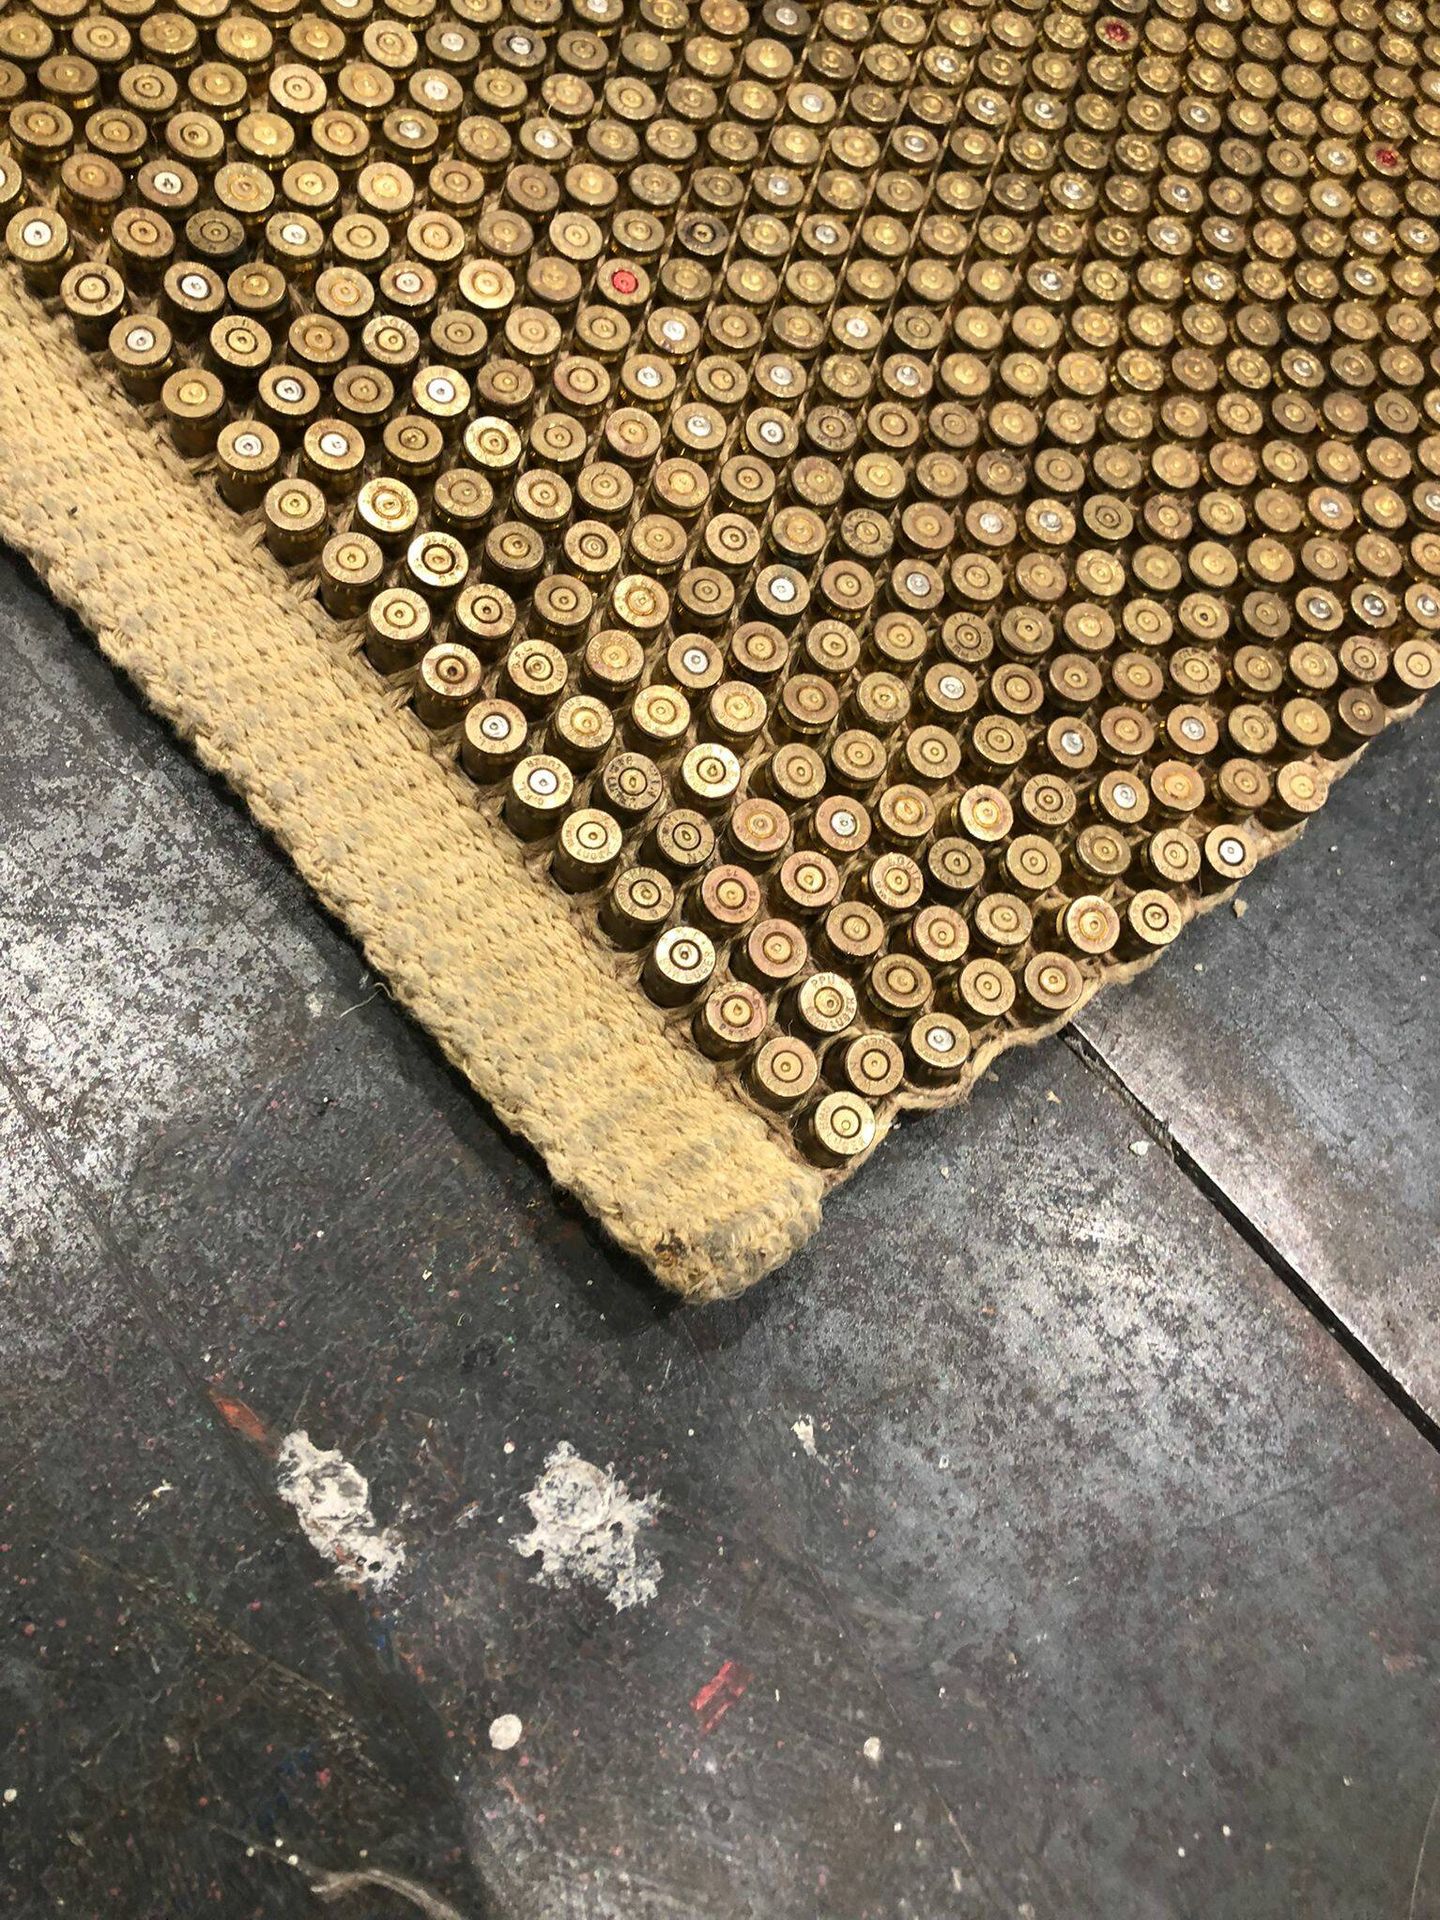 Fragmento de la alfombra compuesta por balas. (Vanitatis)